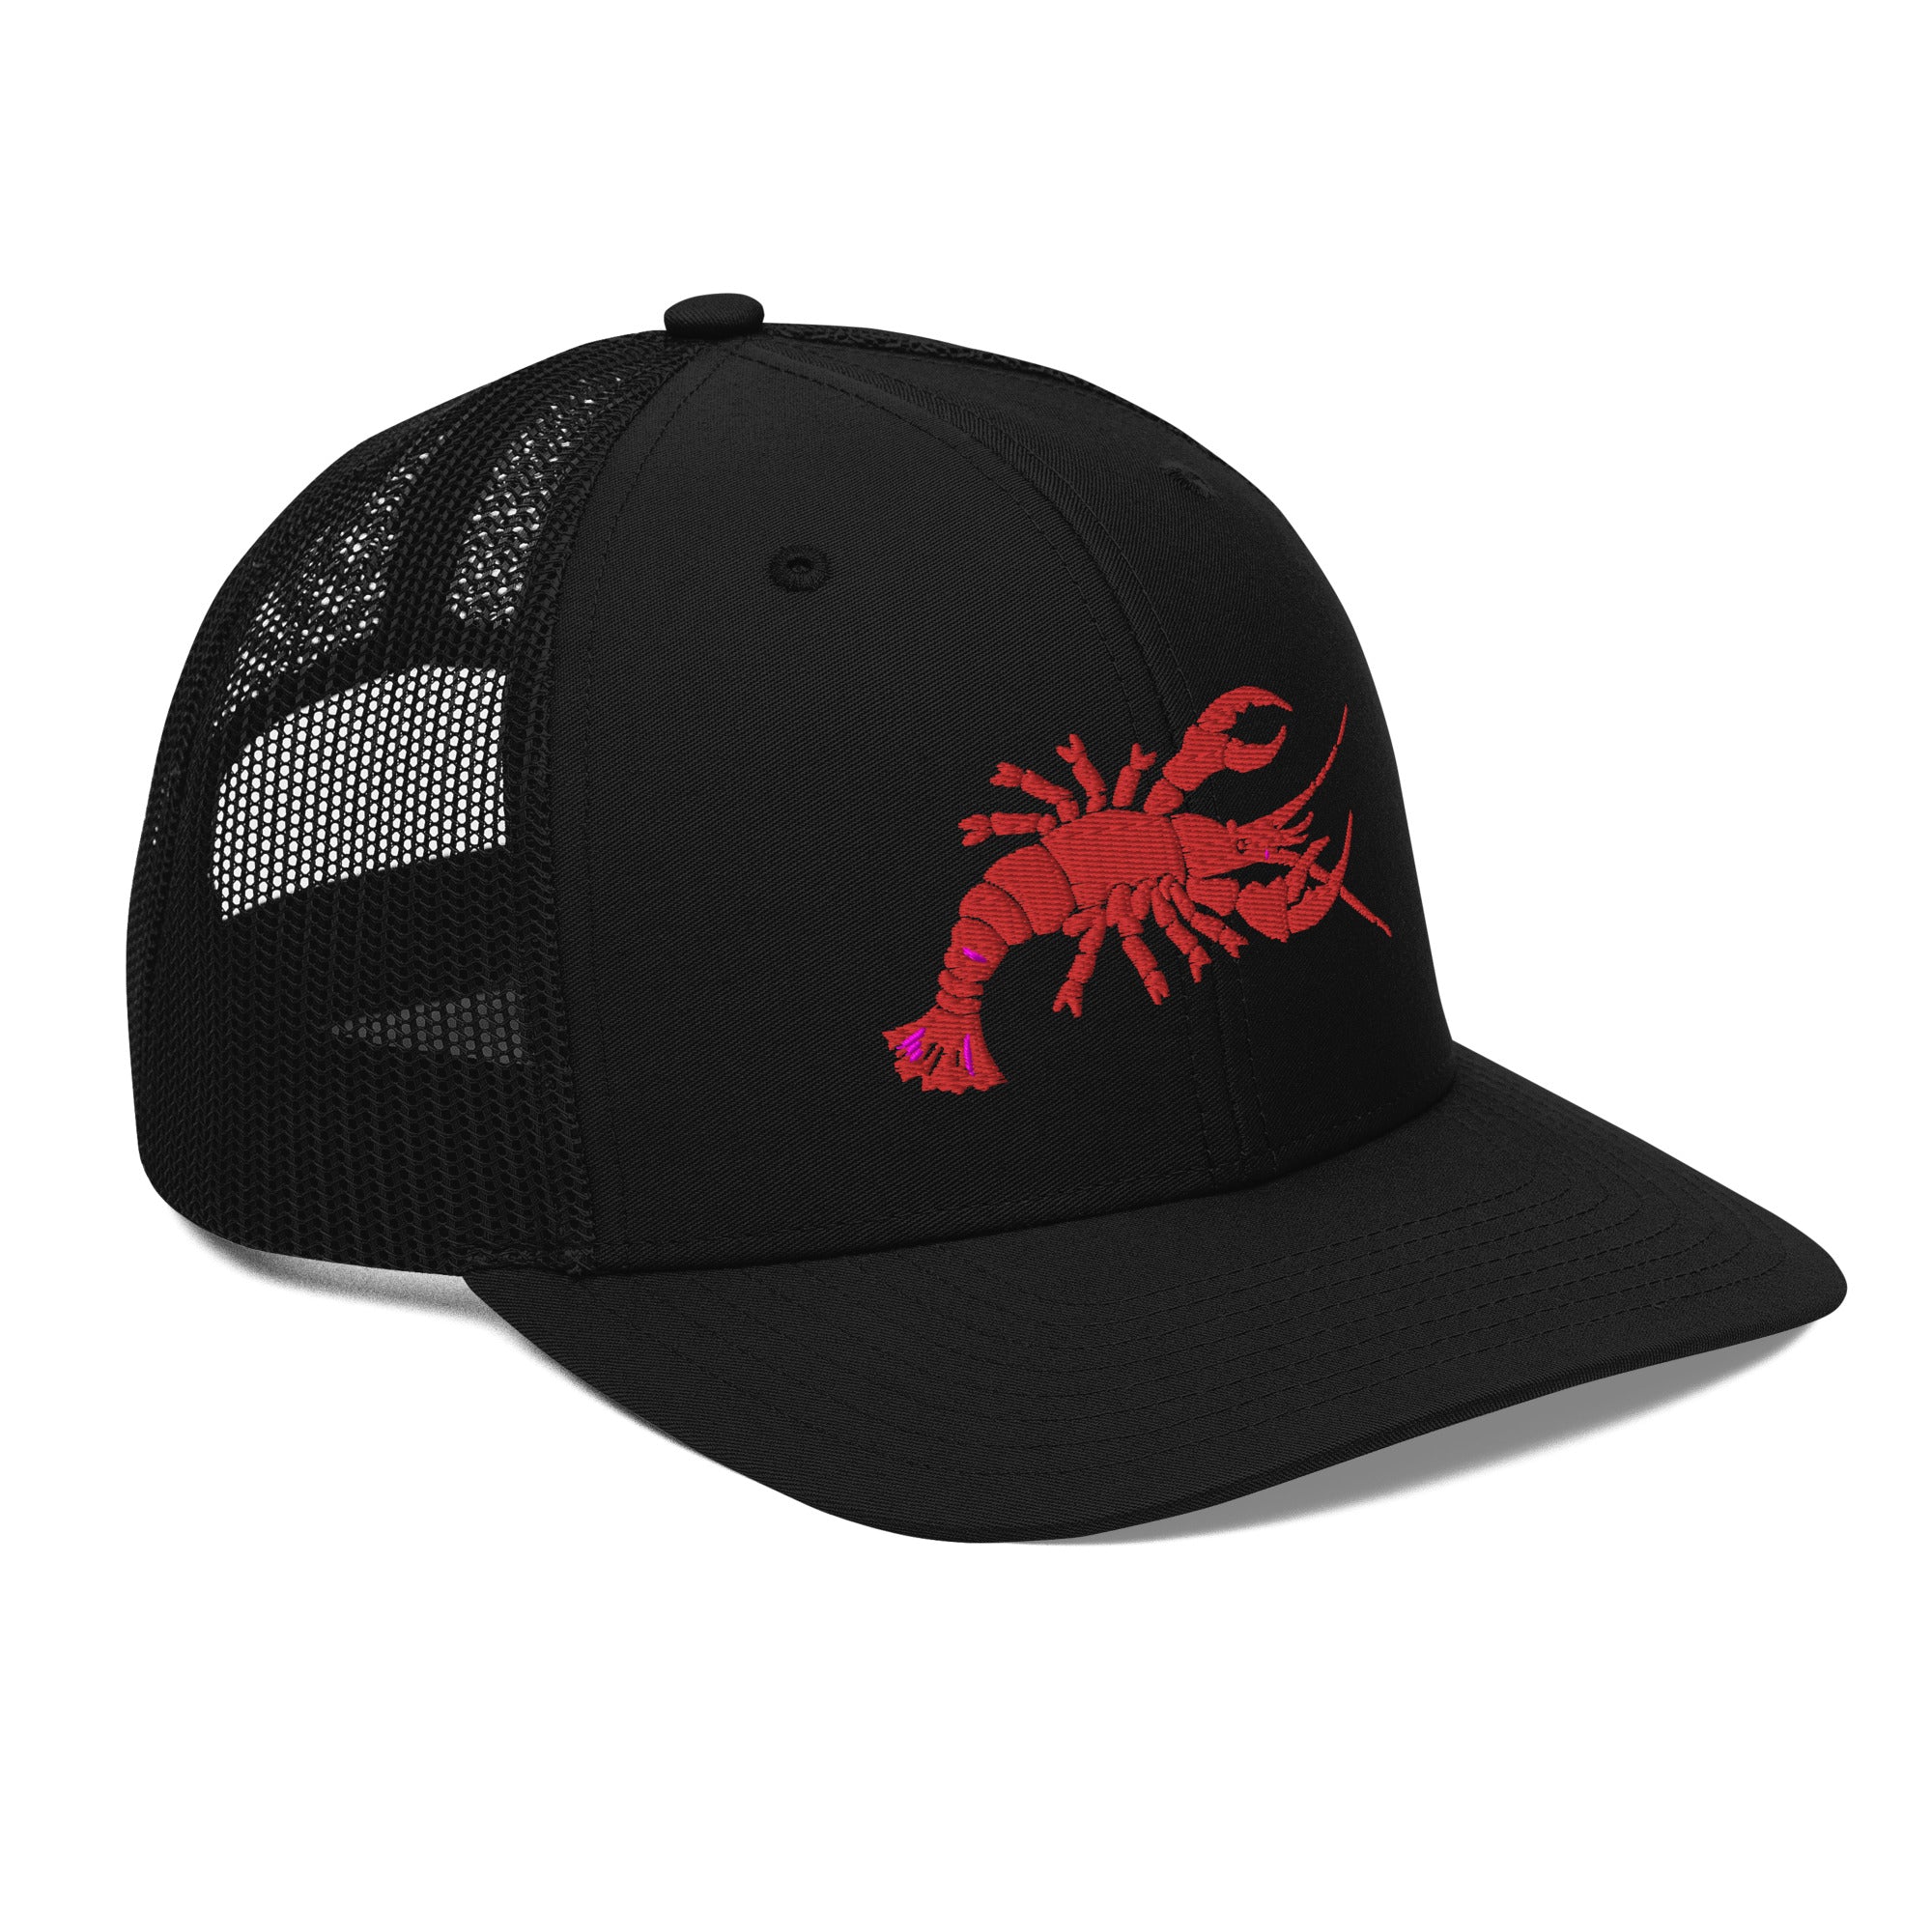 Lobster Hierarchy Trucker Cap